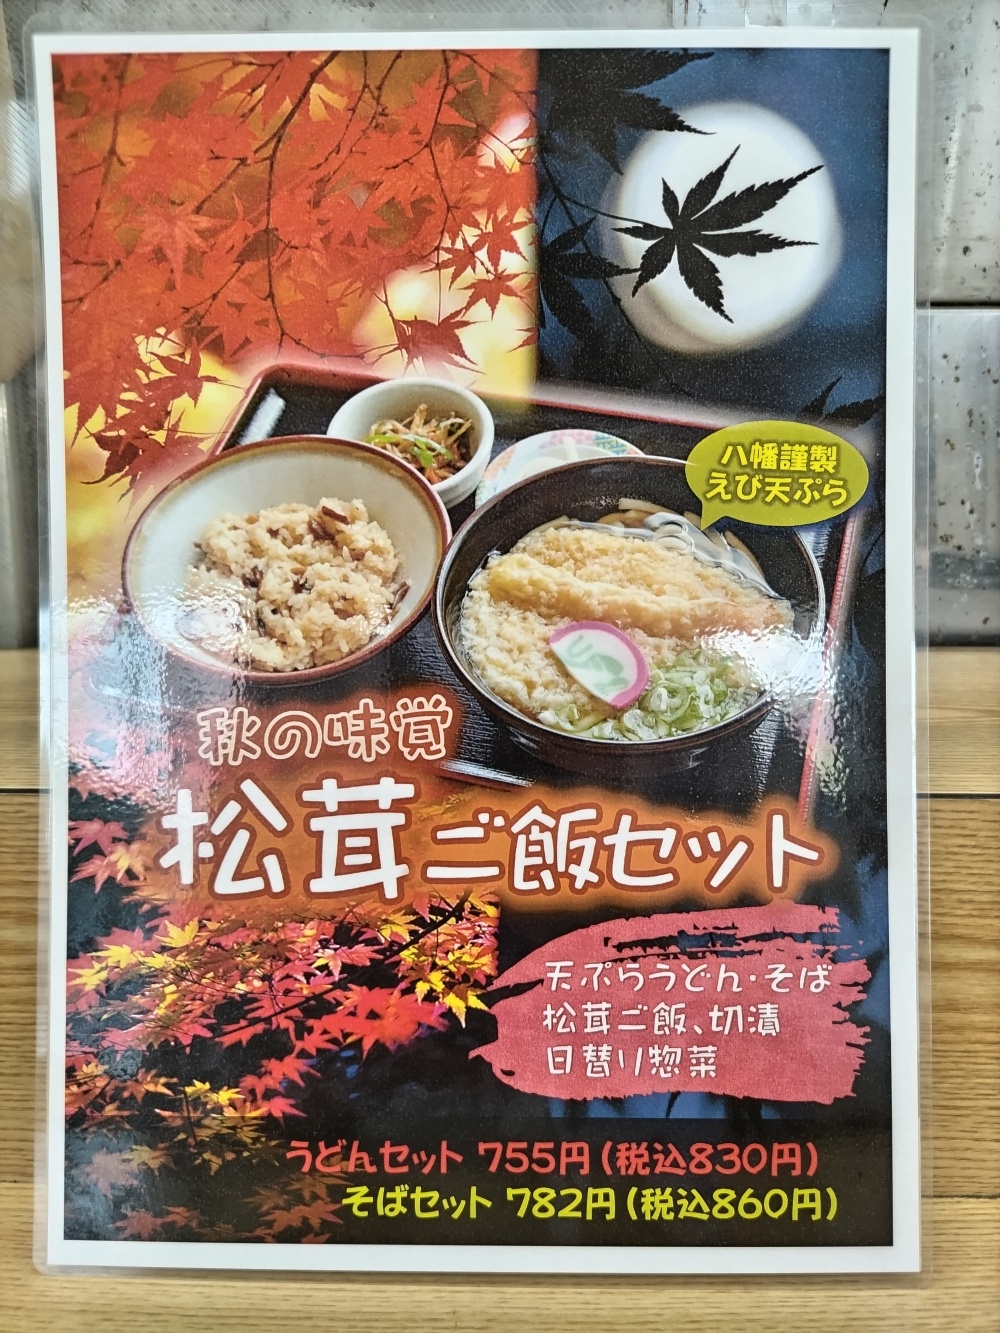 すしべんの「松茸ご飯セット」メニュー